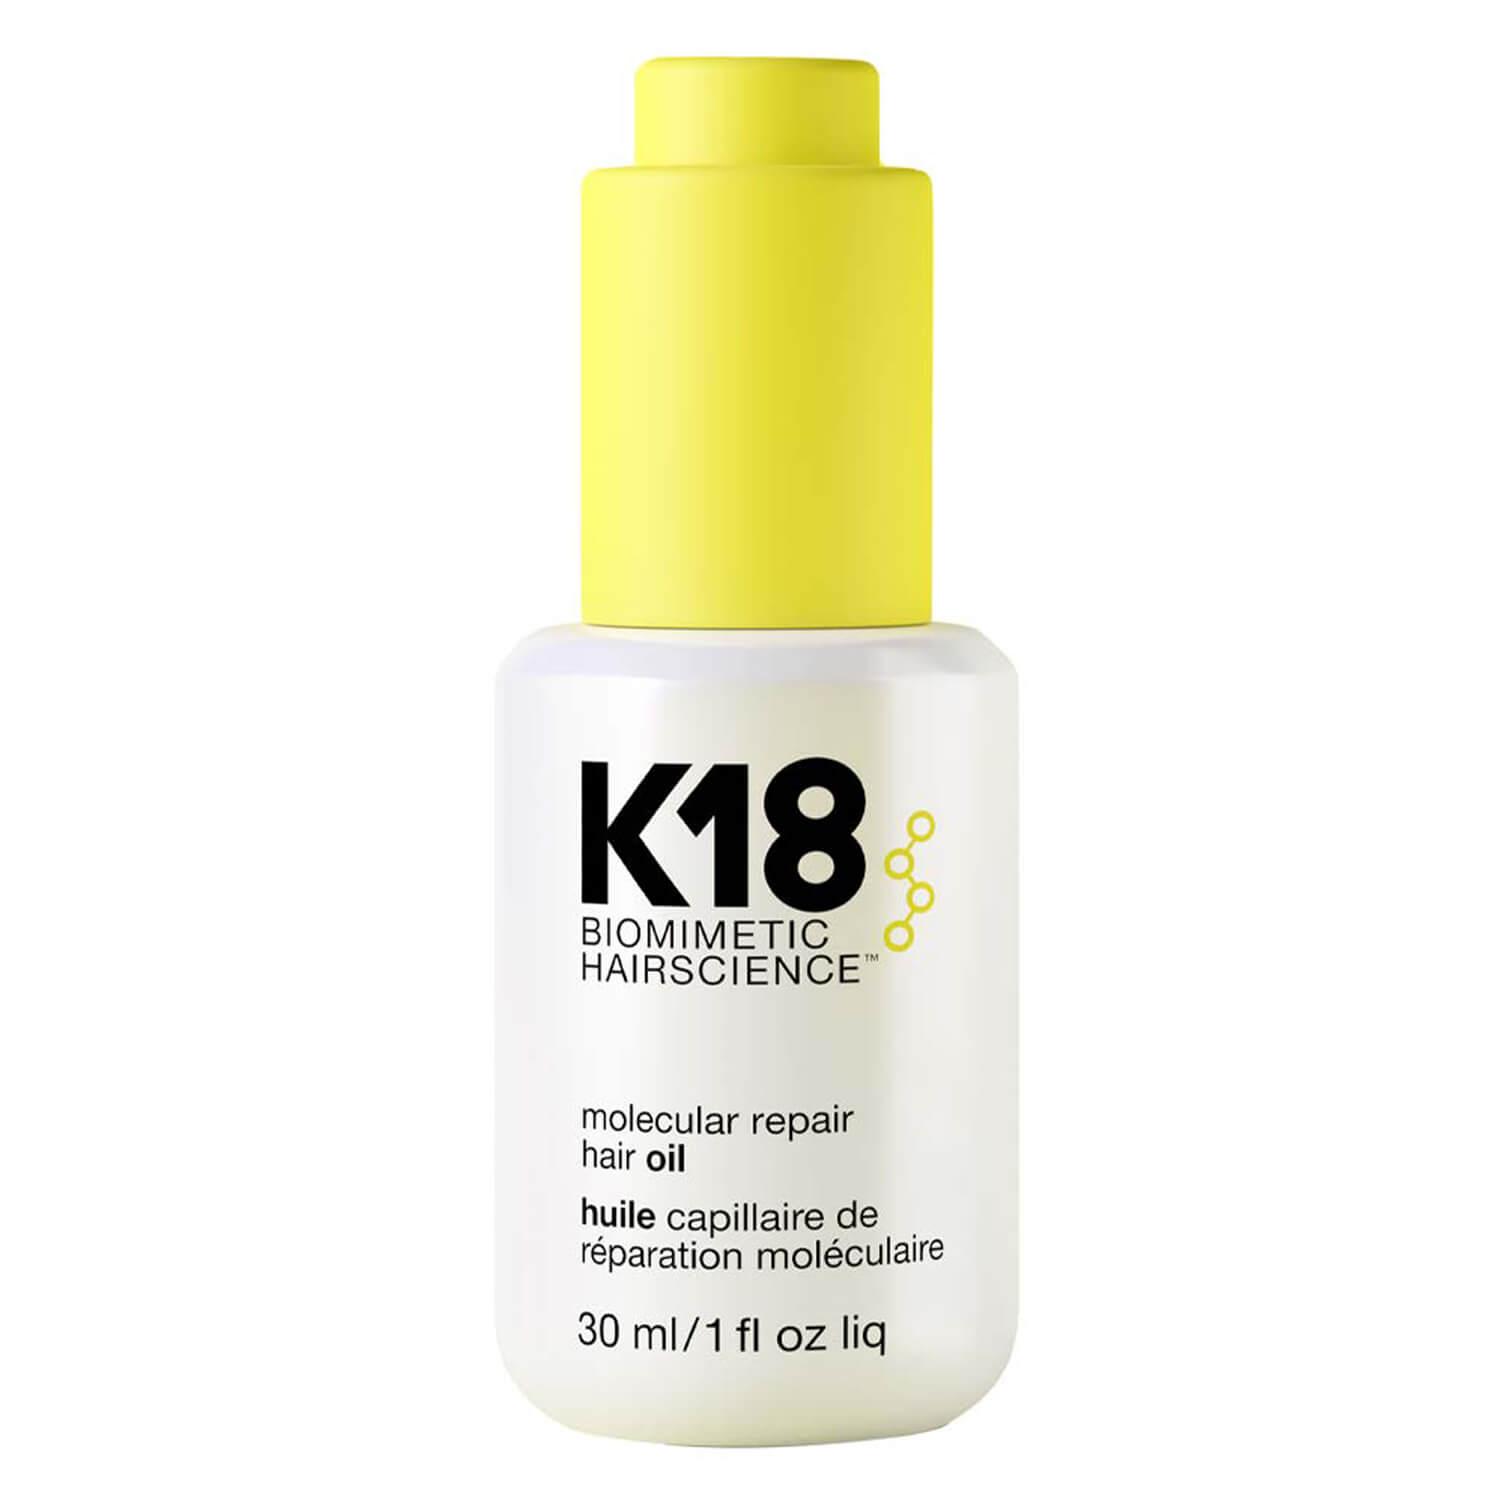 K18 Biomimetic Hairscience - molecular repair hair oil